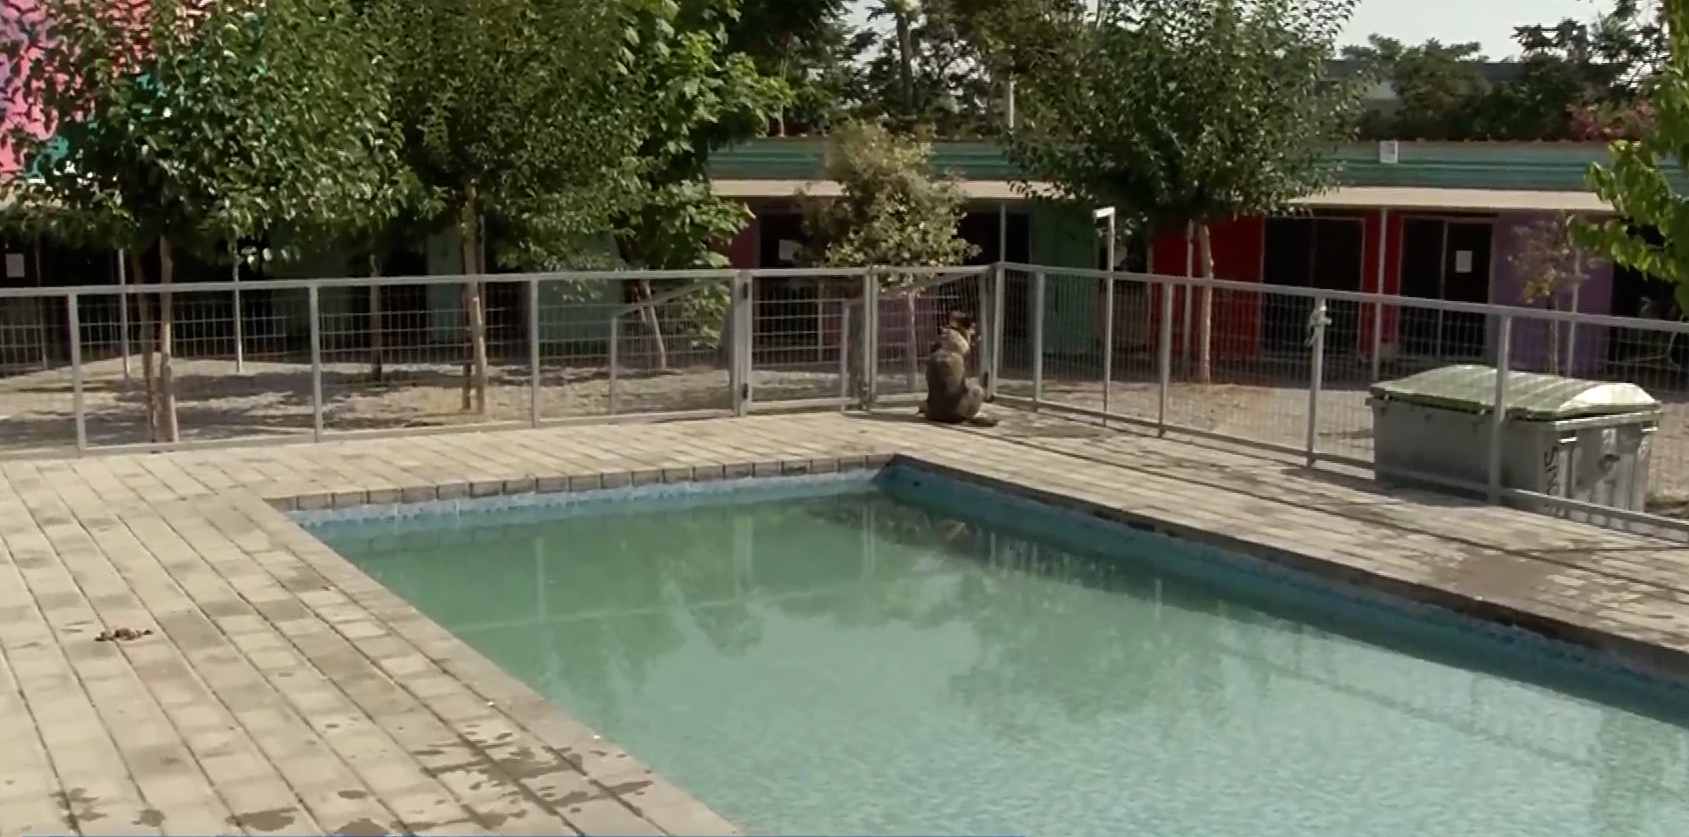 Η Ερμιόνη στην πισίνα του “Σωκράτη” – Το καταφύγιο για τα αδέσποτα του Δήμου Αθηναίων